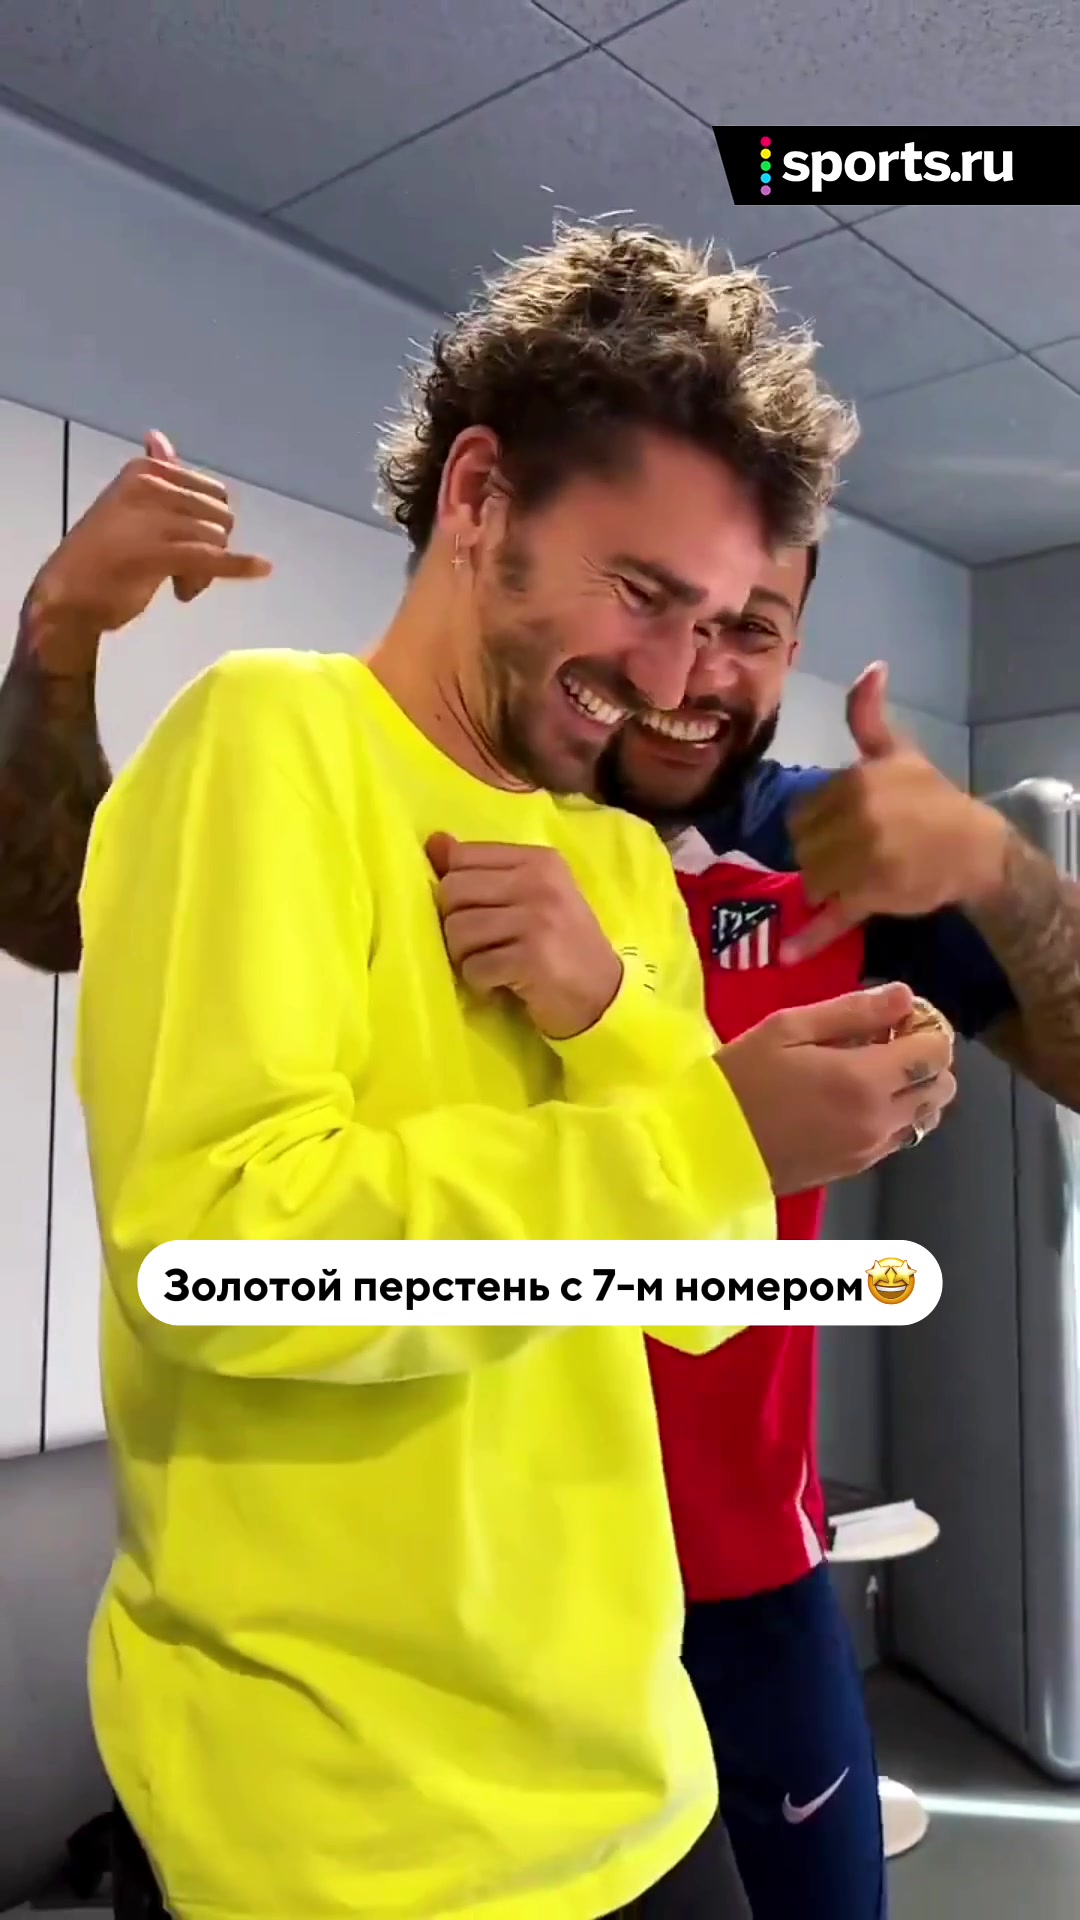 @Sports.ru